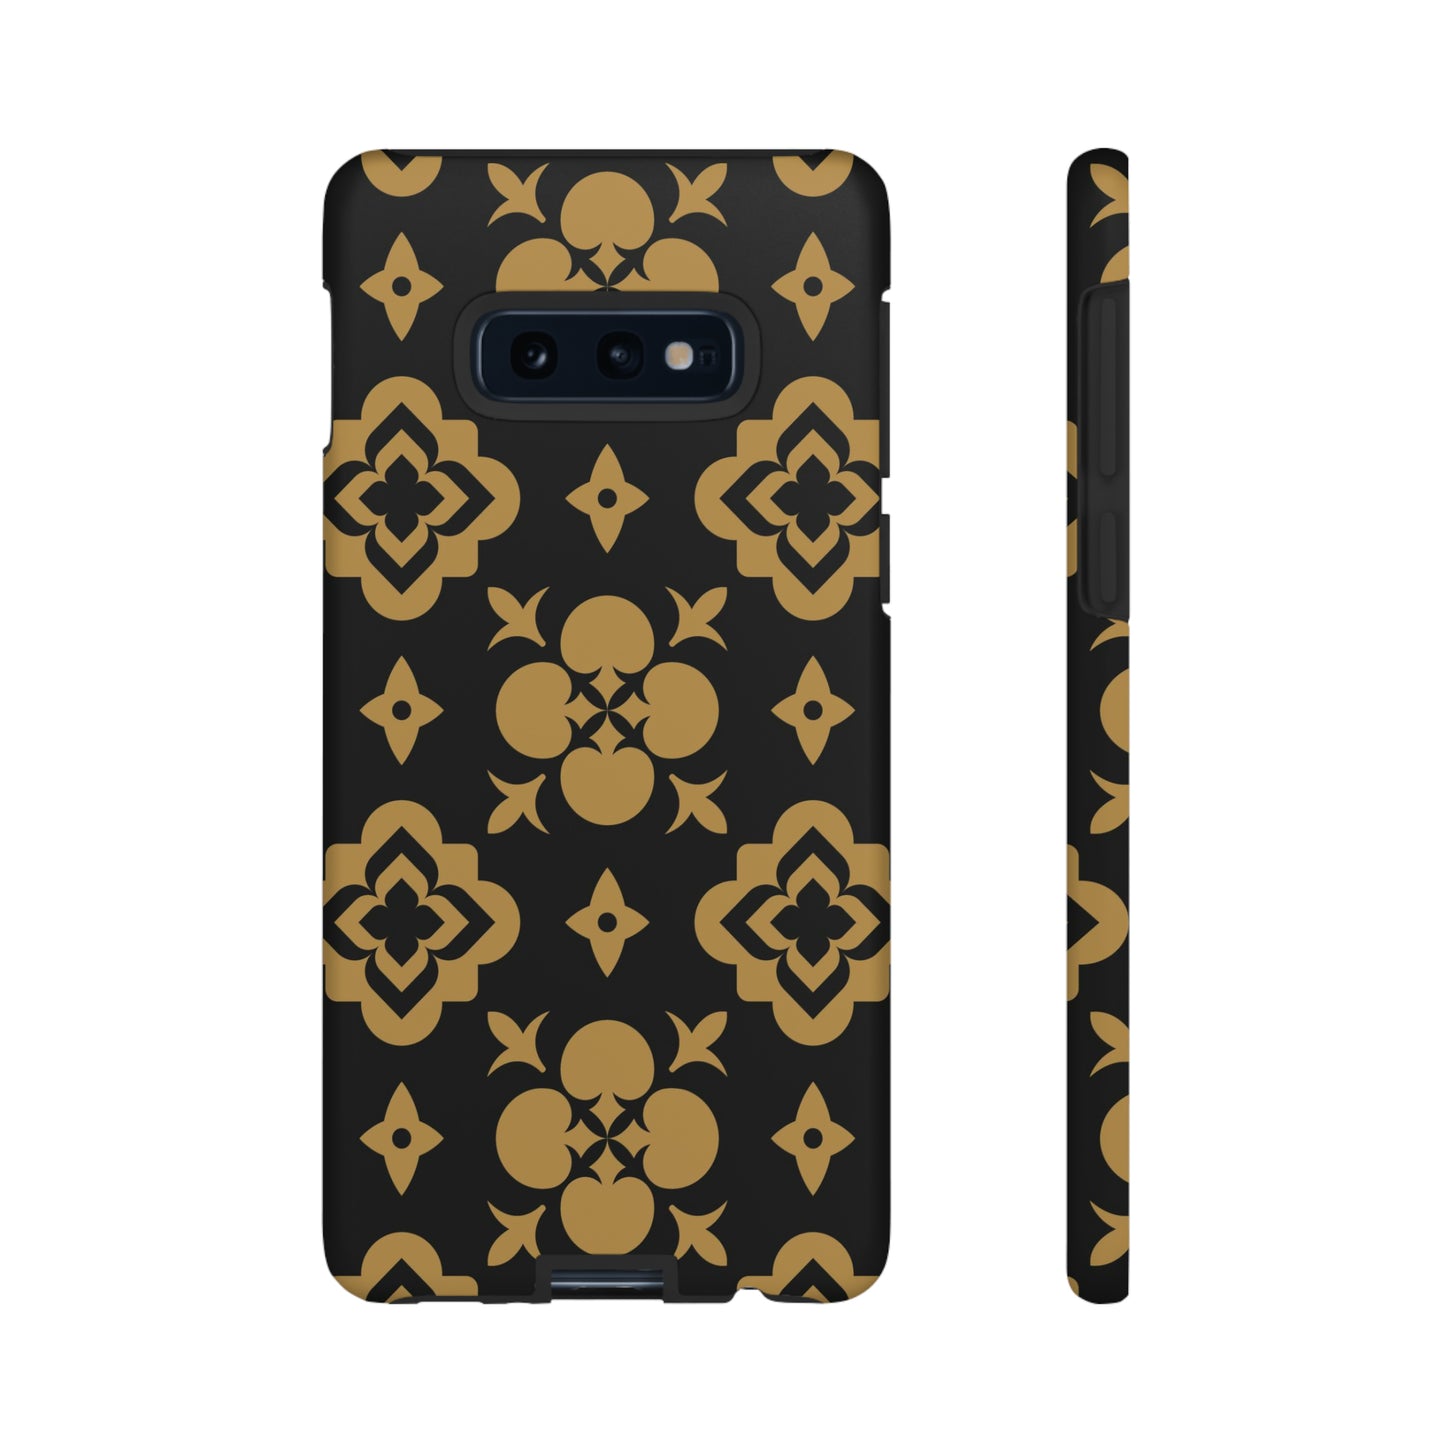 Geometric luxury Samsung case